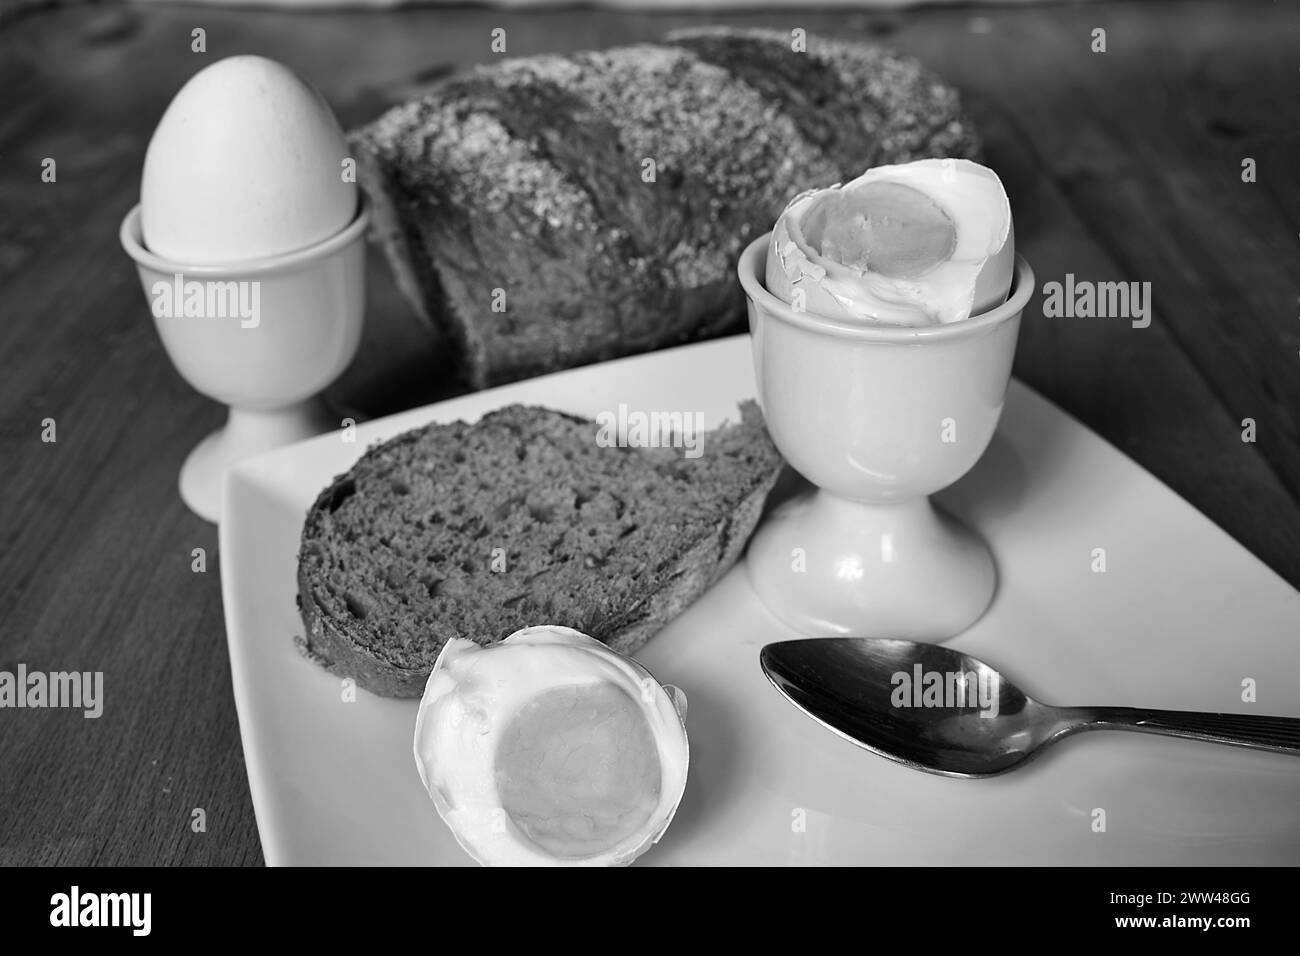 Plats traditionnels pour le petit déjeuner de Pâques et le beurre d'agneau en Pologne, monochrome Banque D'Images